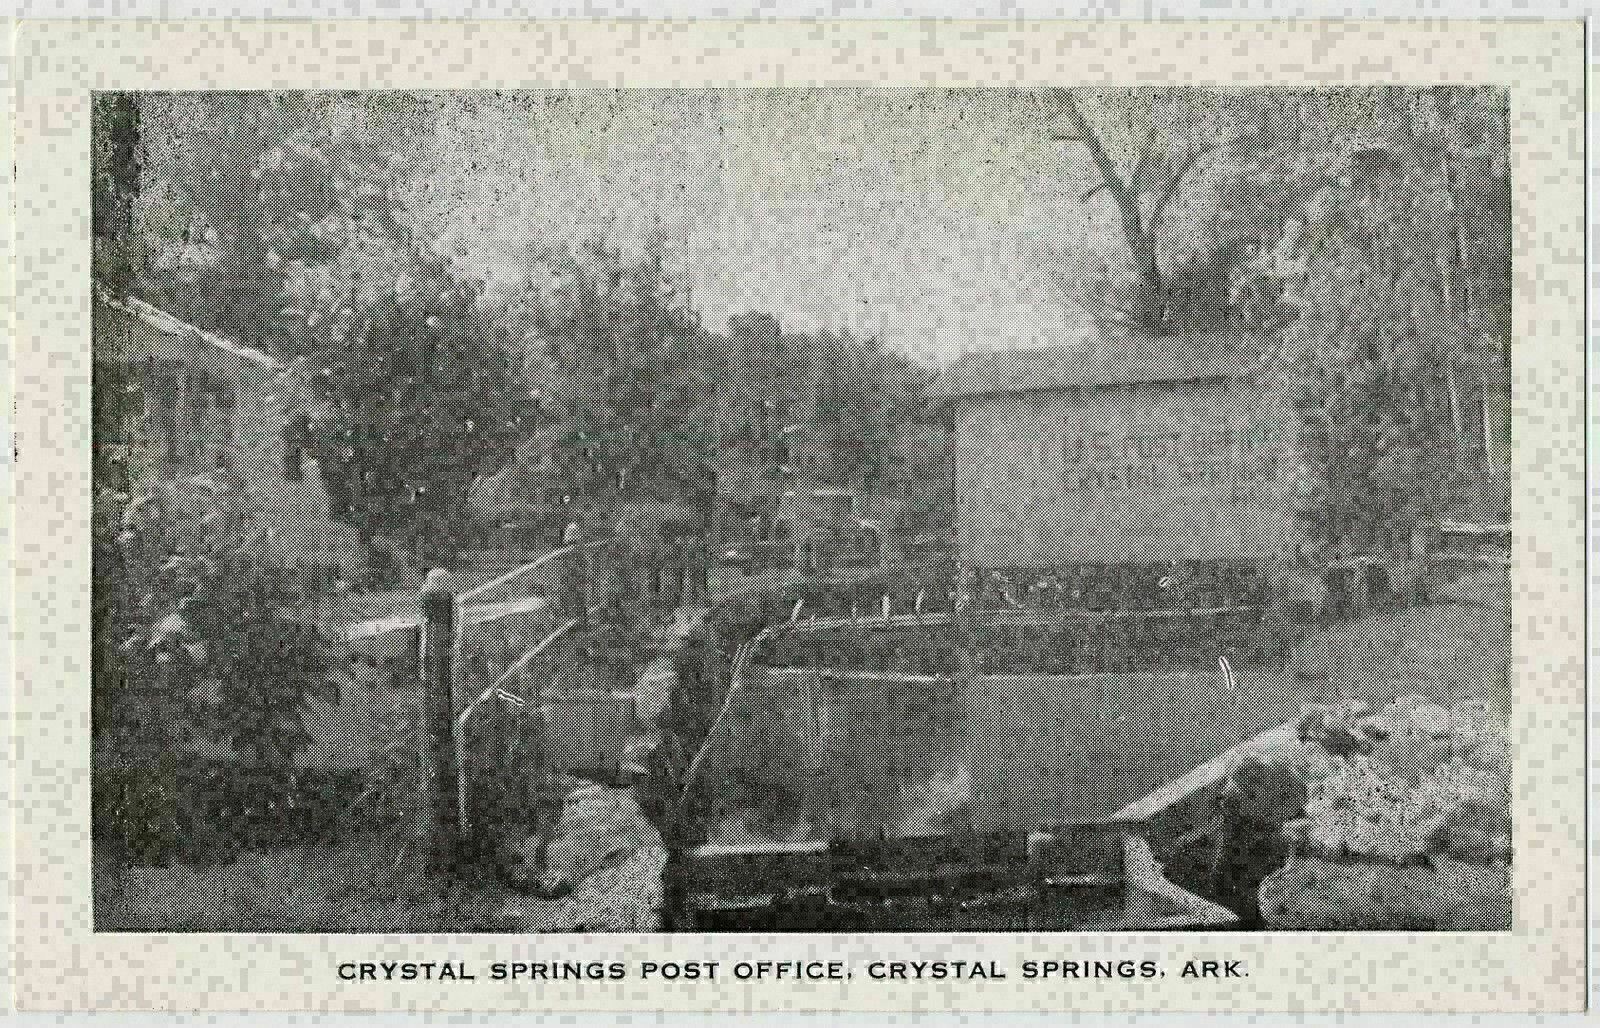 Crystal Springs Post Office, Crystal Springs, Arkansas